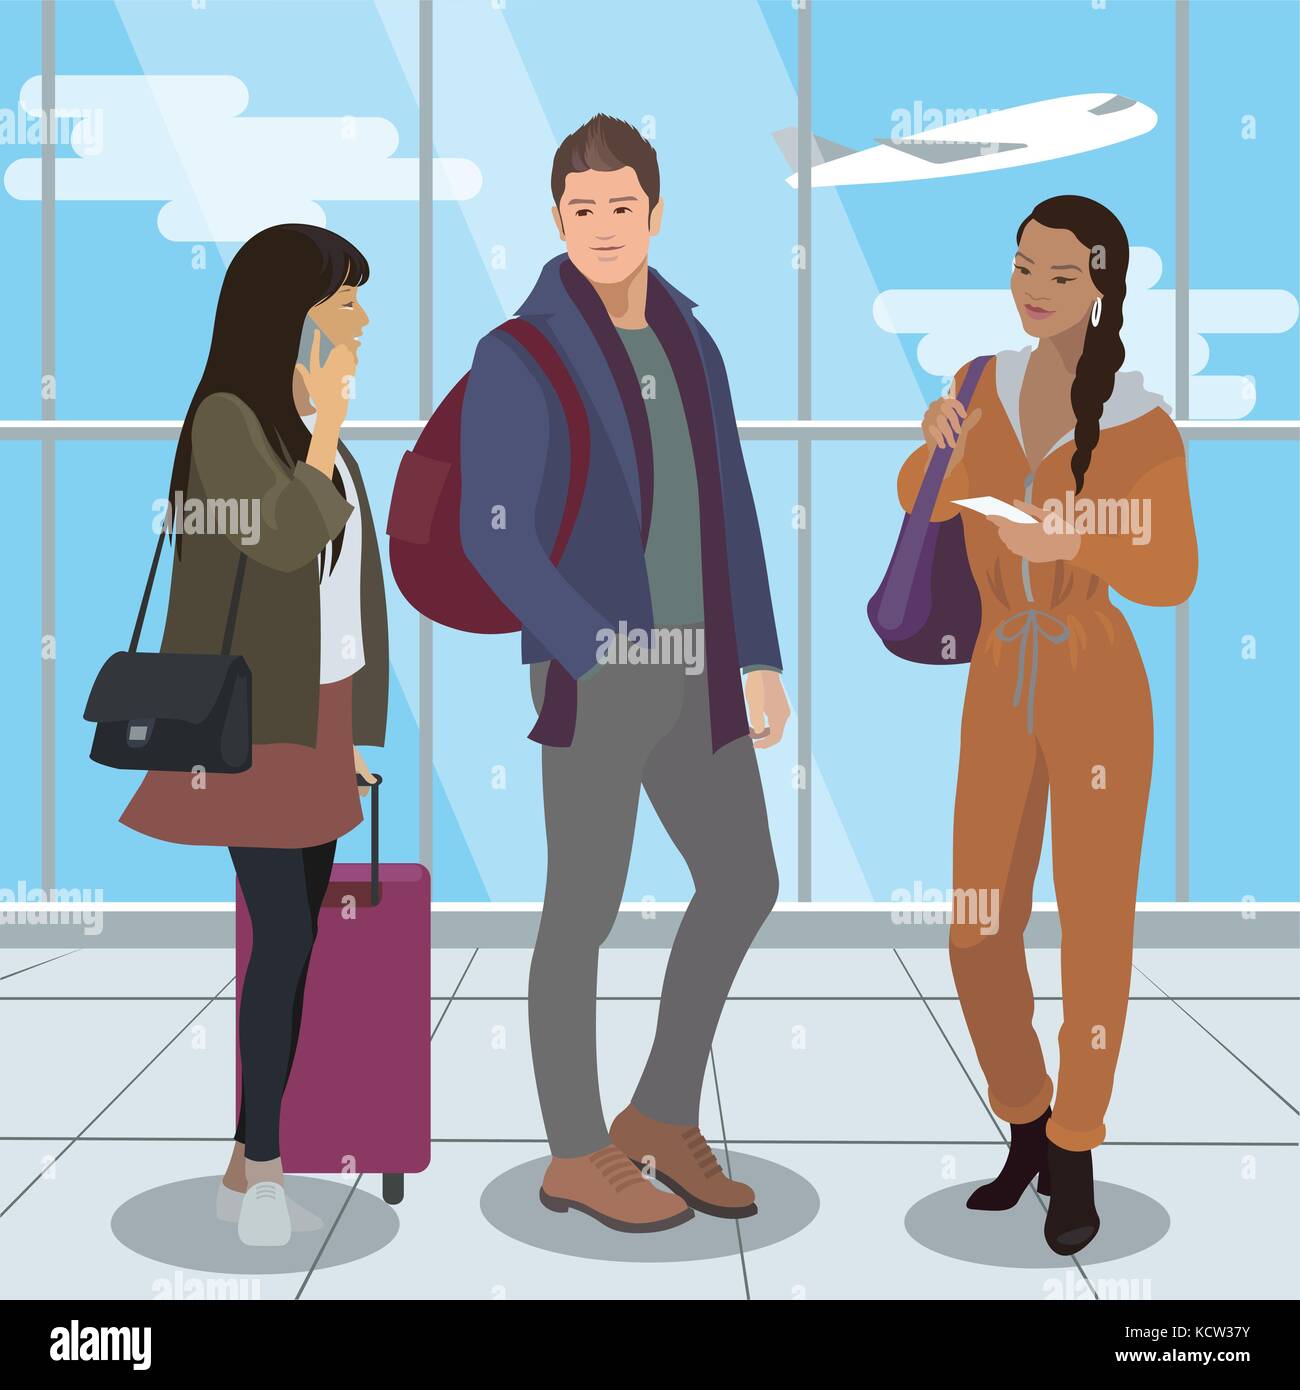 Die Menschen reisen mit dem Flugzeug Flughafen Passagiere. Vector Illustration Stock Vektor